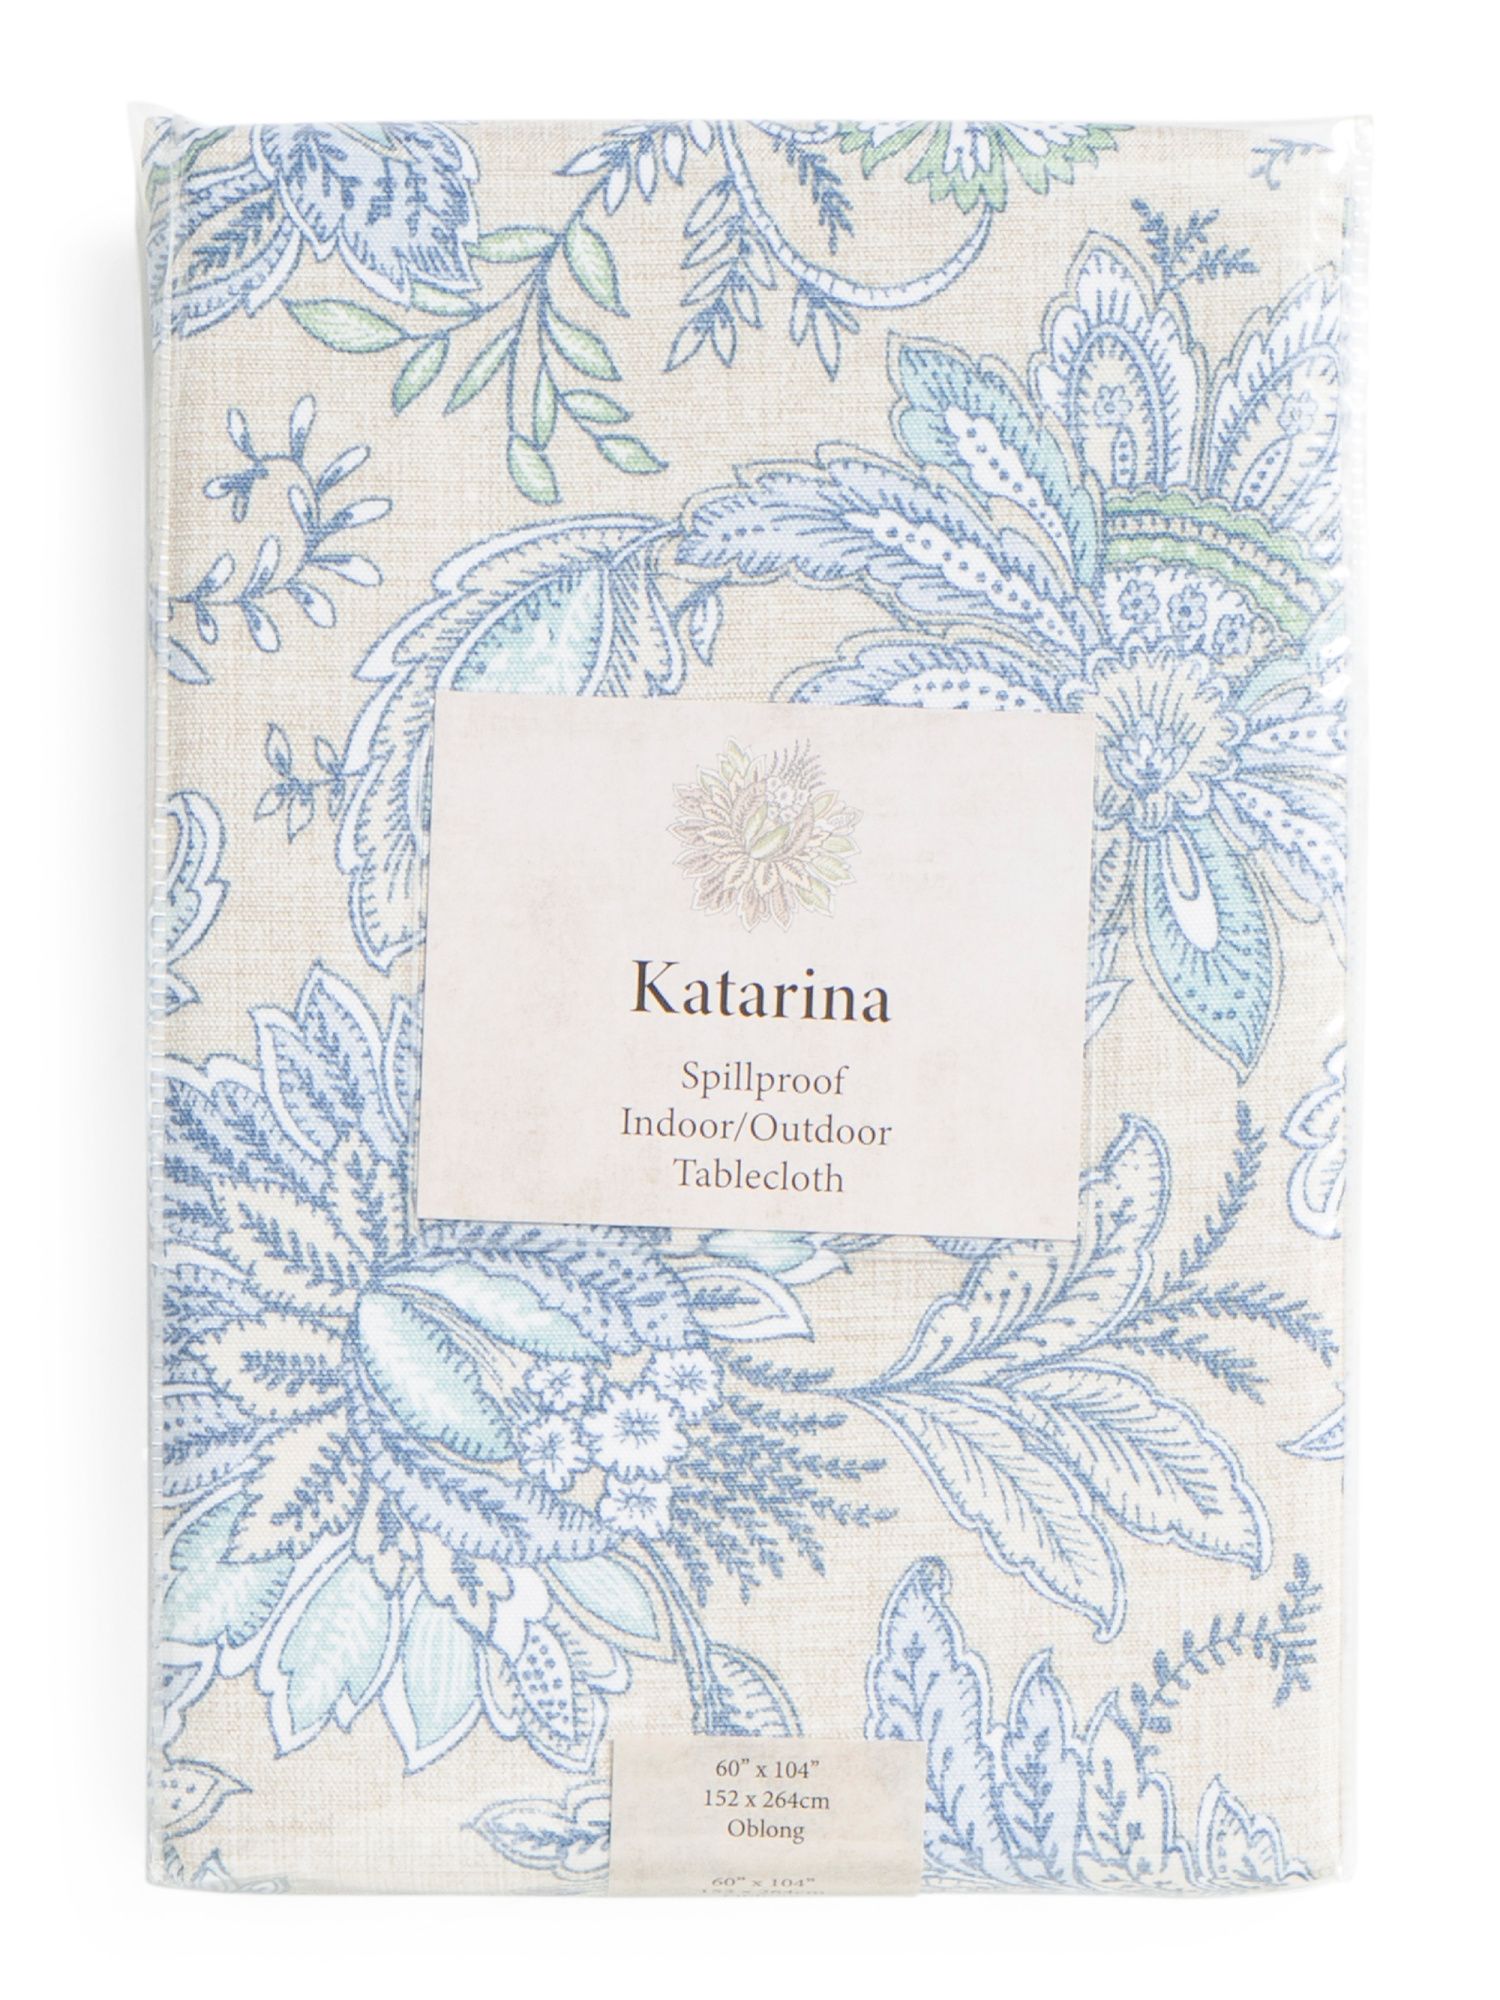 Katarina Indoor Outdoor Tablecloth | TJ Maxx